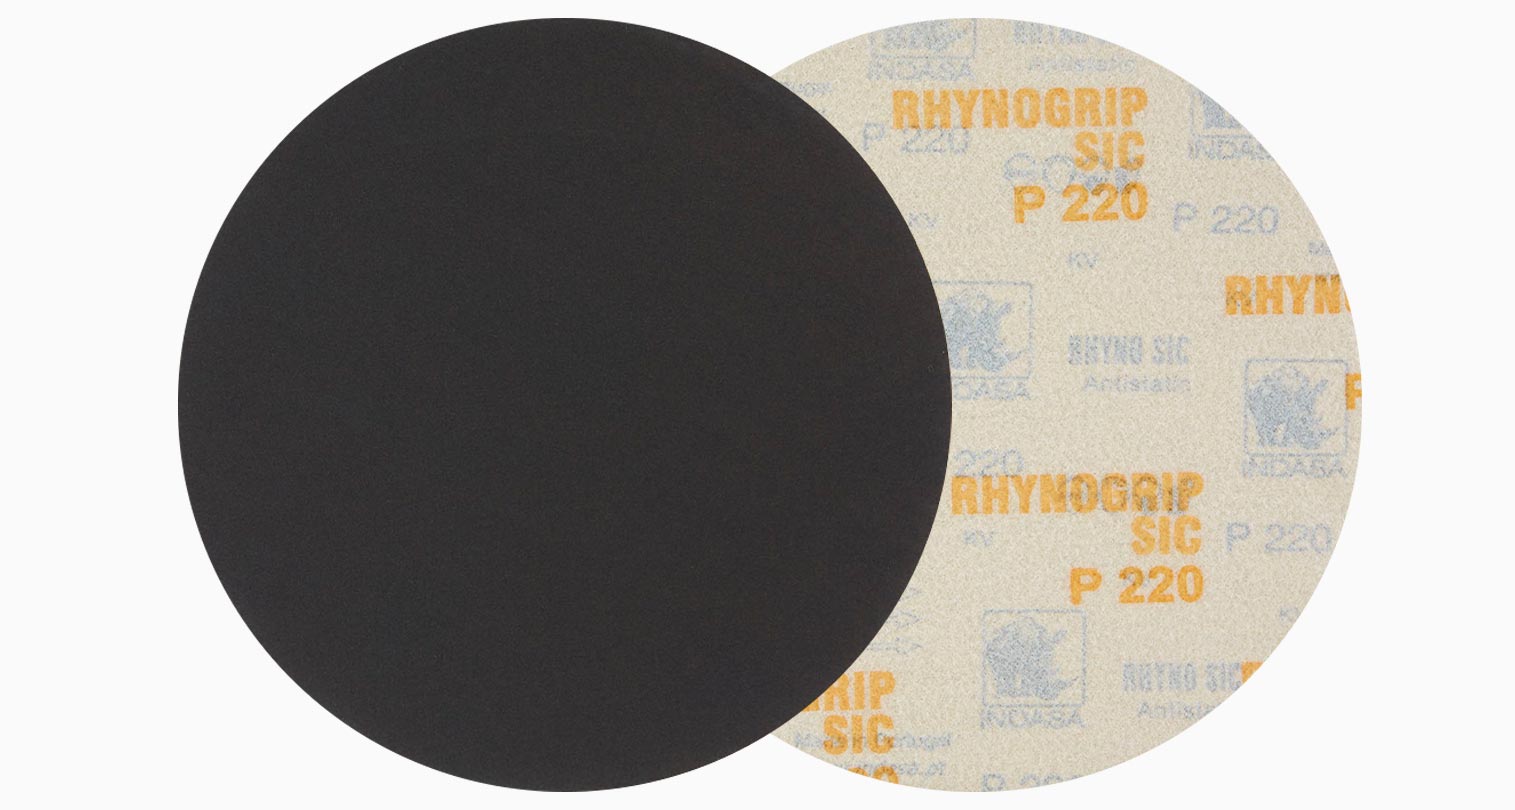 INDASA Abrasives Rhynogrip SiC discs